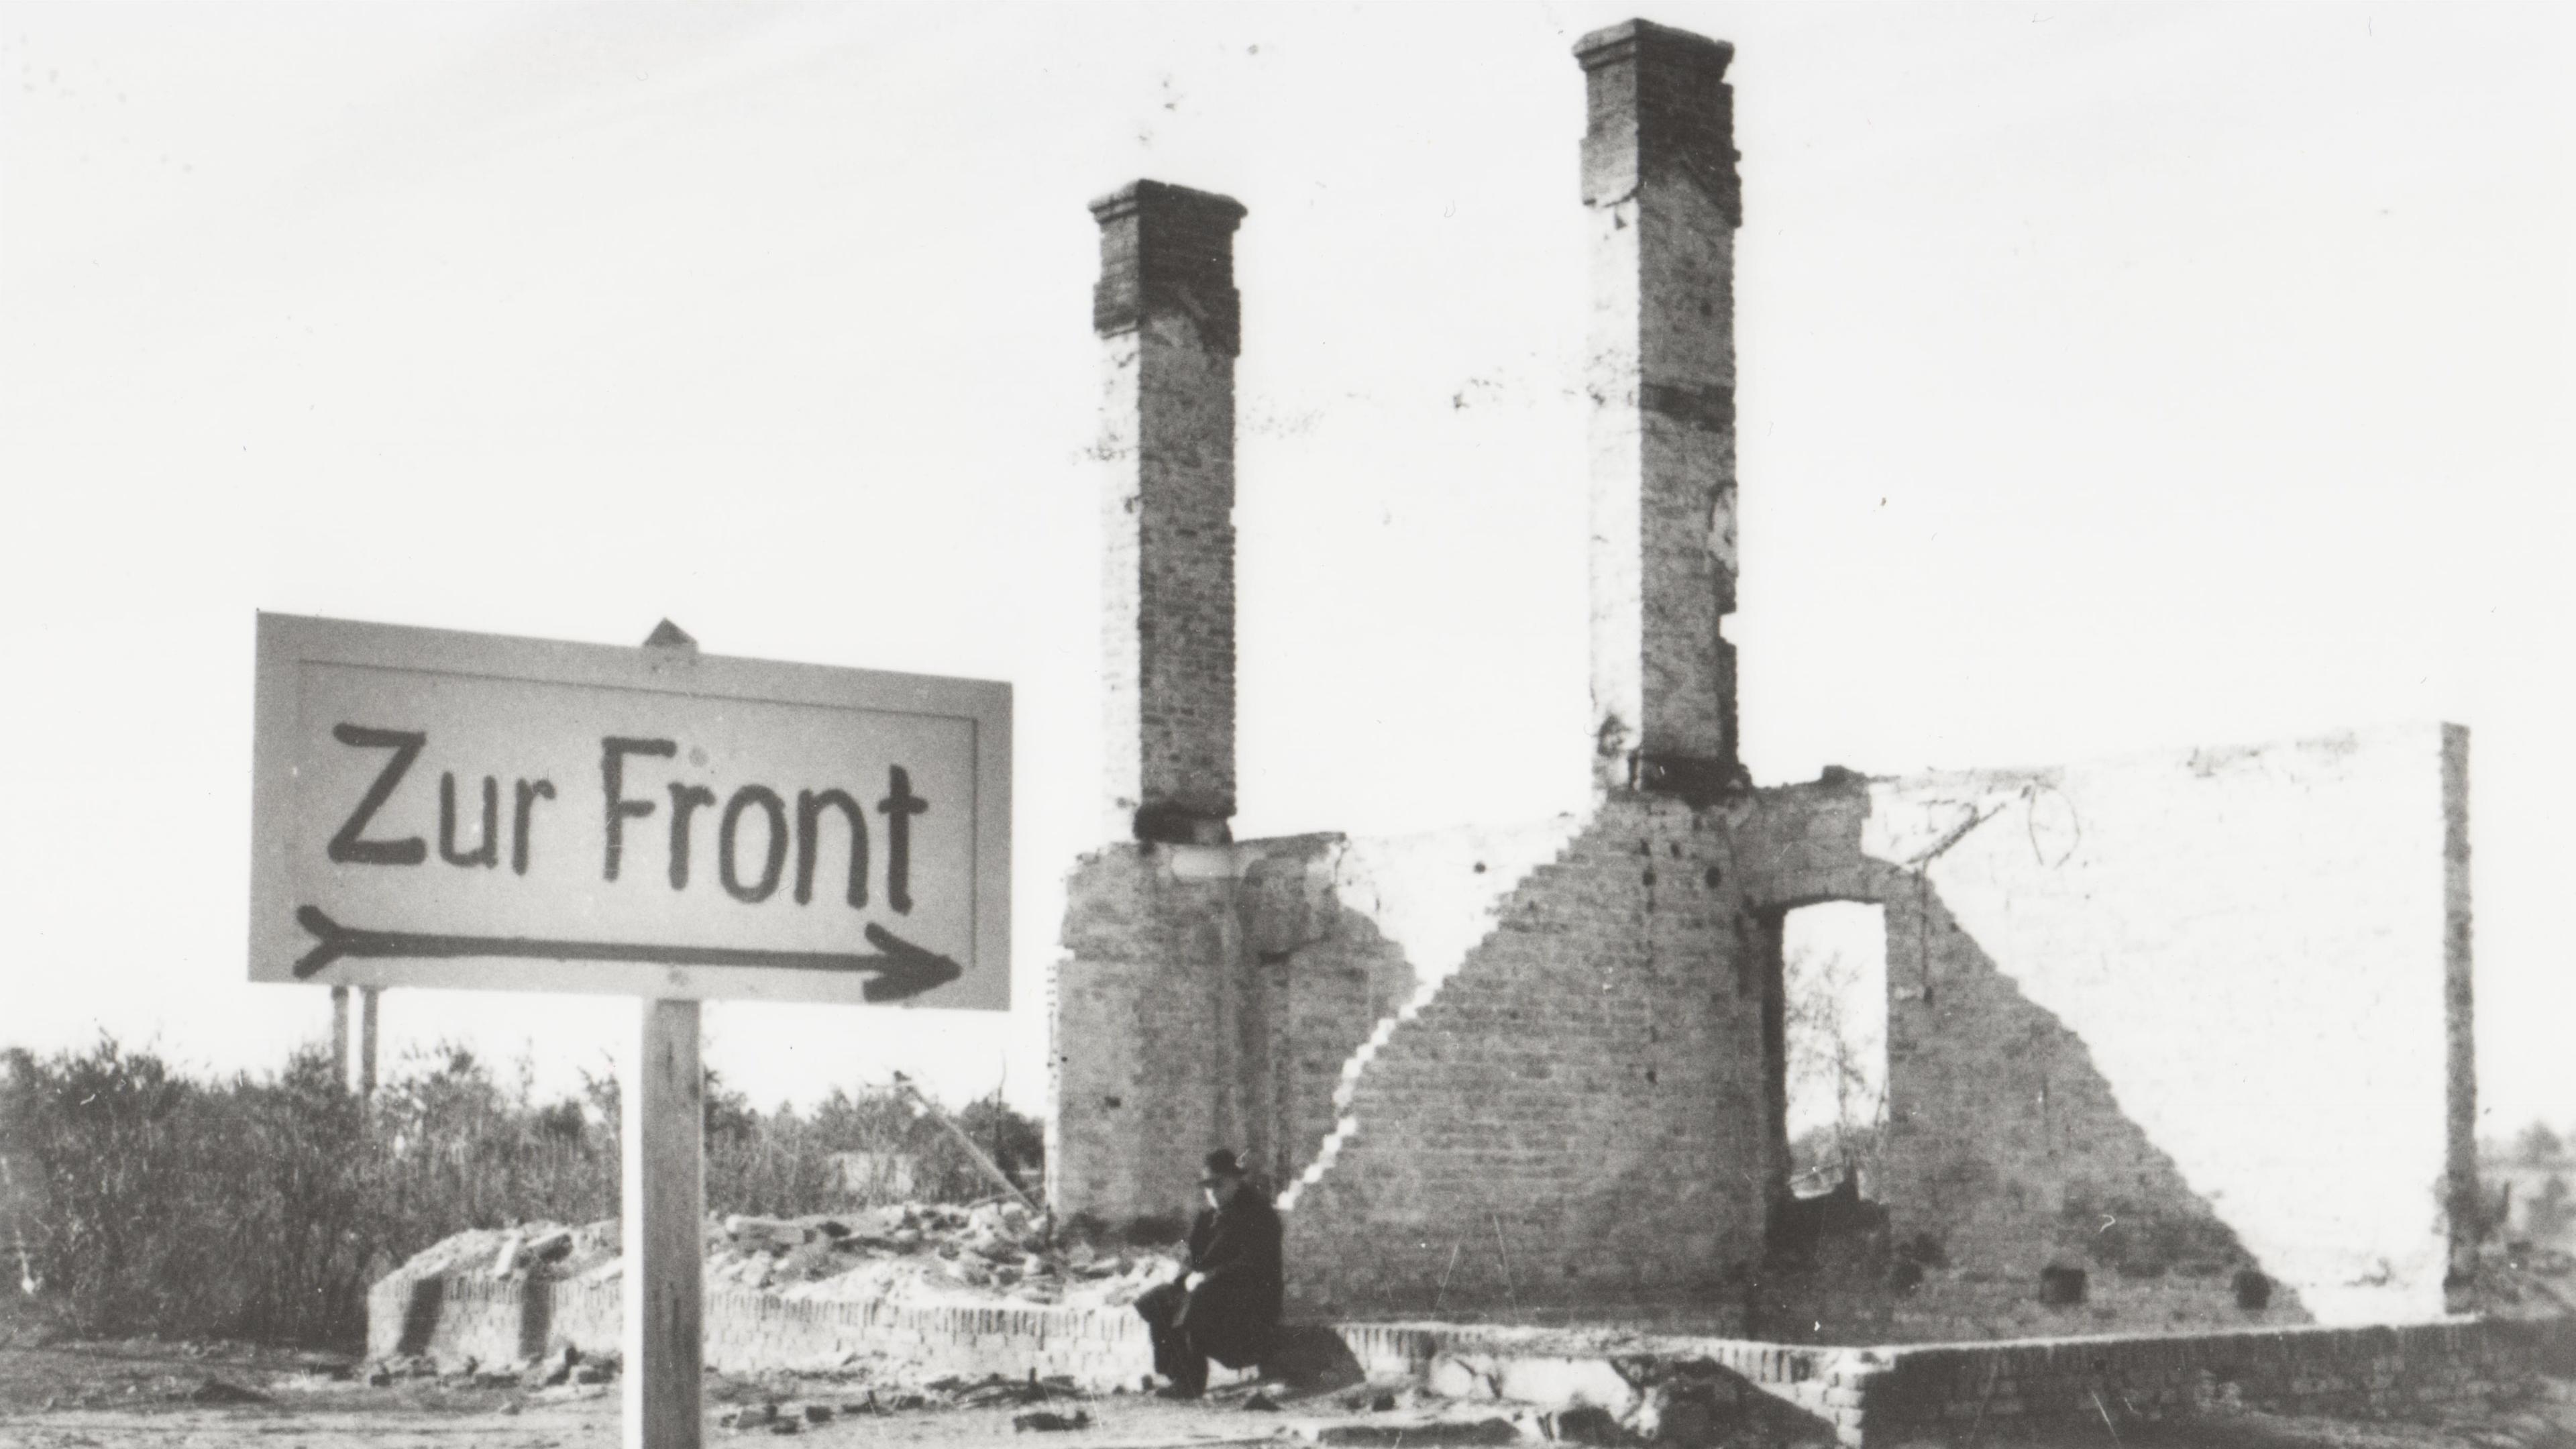 "Der Zweite Weltkrieg: Der Überfall": Ein Mann sitzt in den Ruinen eines durch den Krieg zerstörten Hauses in einer polnischen Ortschaft. Im Vordergrund ist ein Wegweiser mit der Aufschrift "Zur Front" errichtet worden.